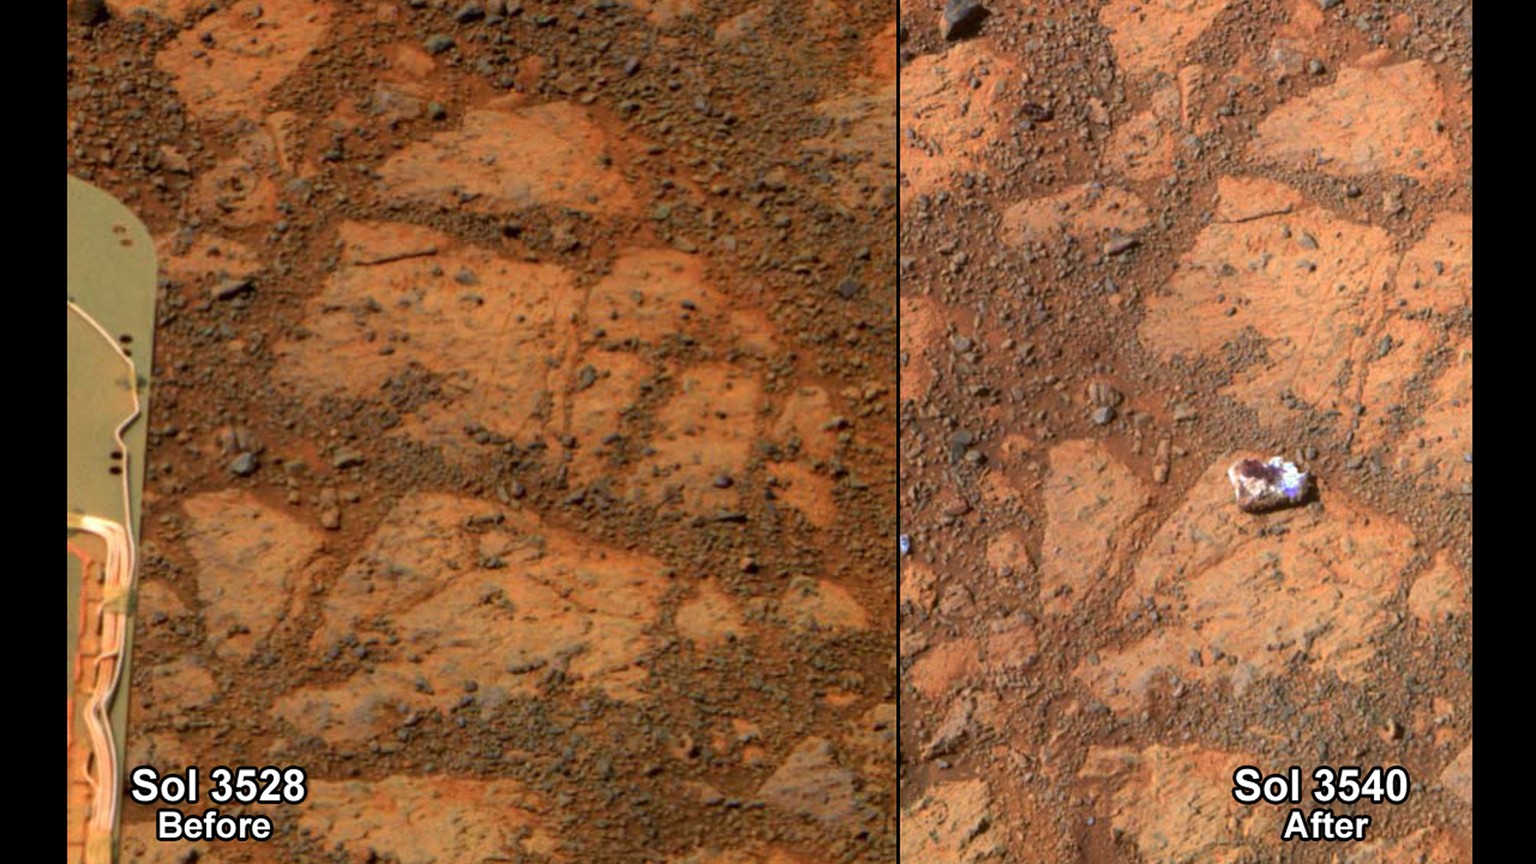 Der Stein des Anstosses: Plötzlich tauchte vor dem Marsrover ein runder Steinklumpen auf.